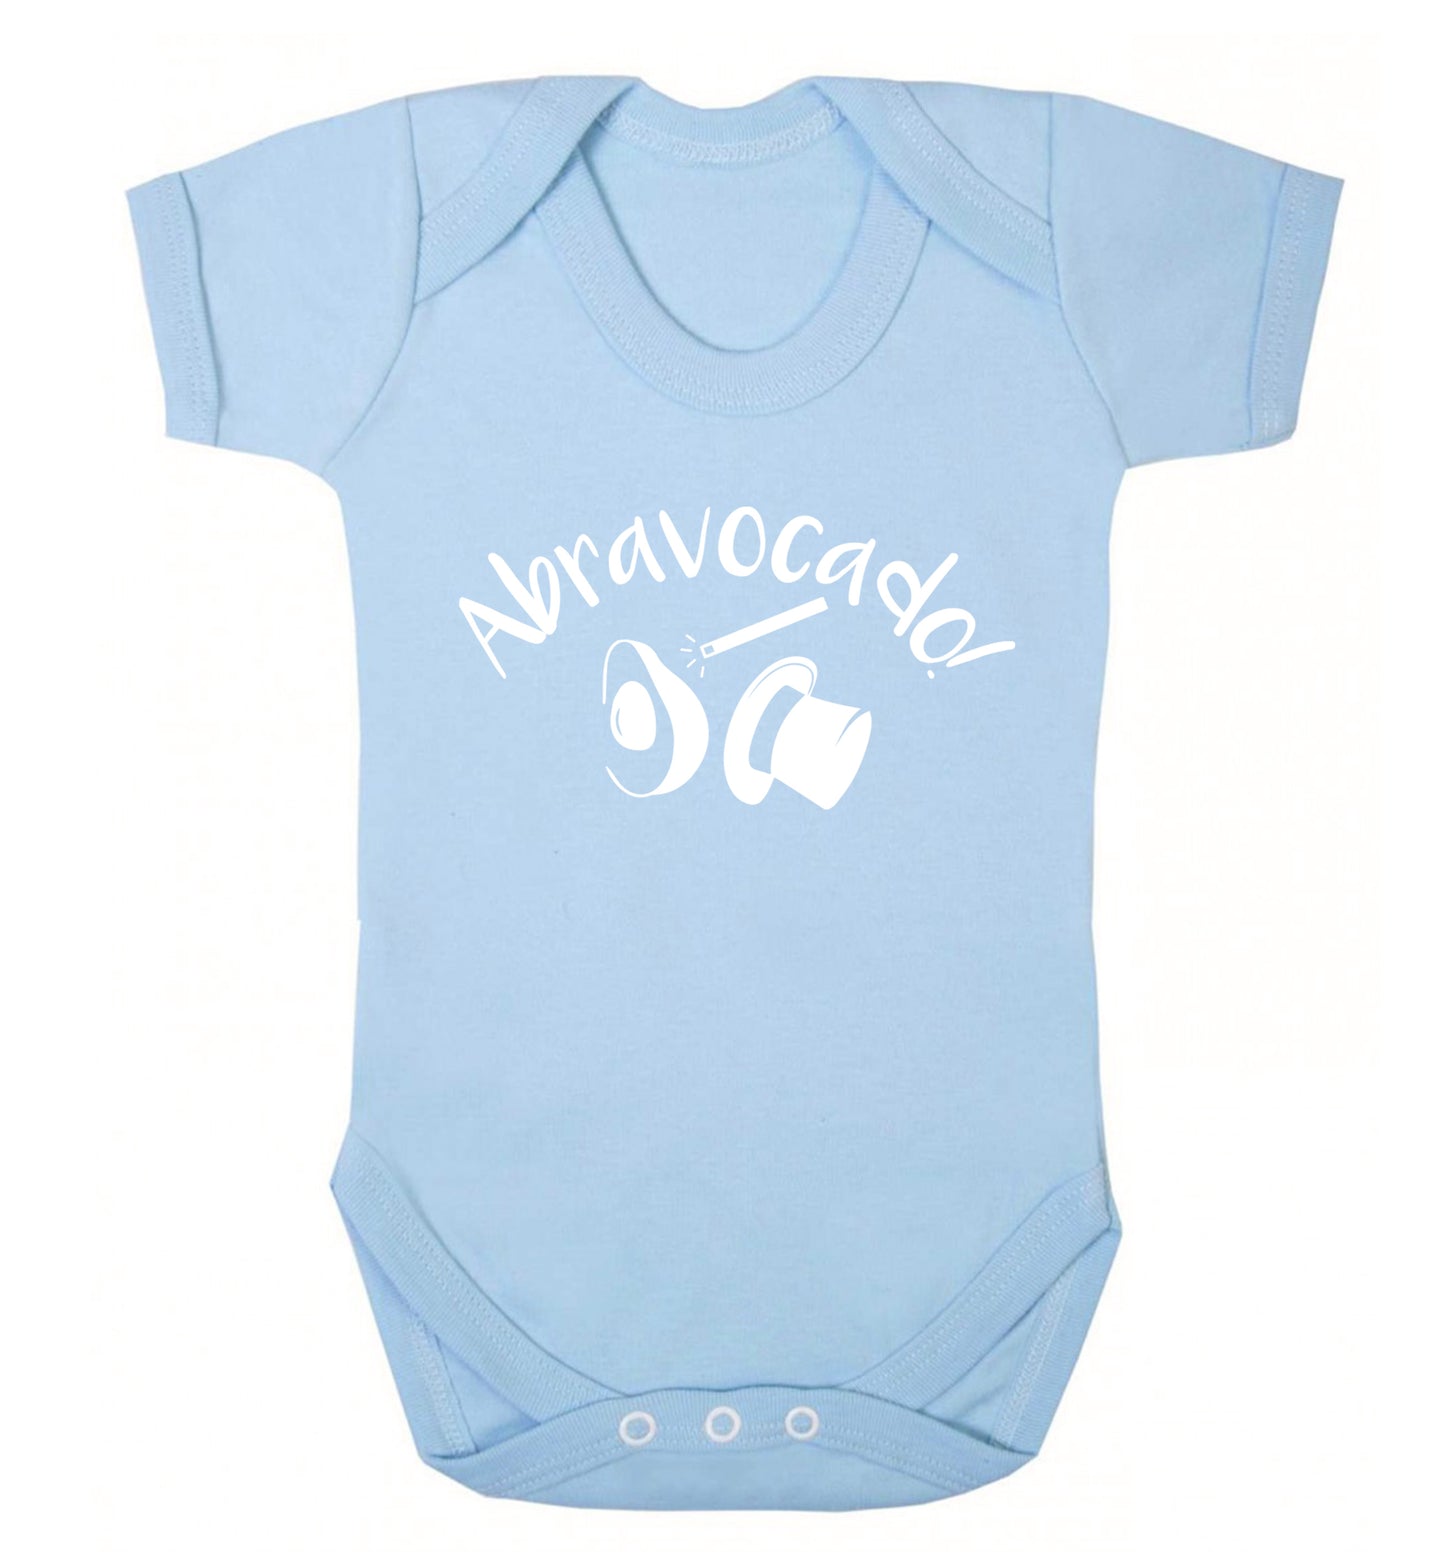 Abravocado Baby Vest pale blue 18-24 months